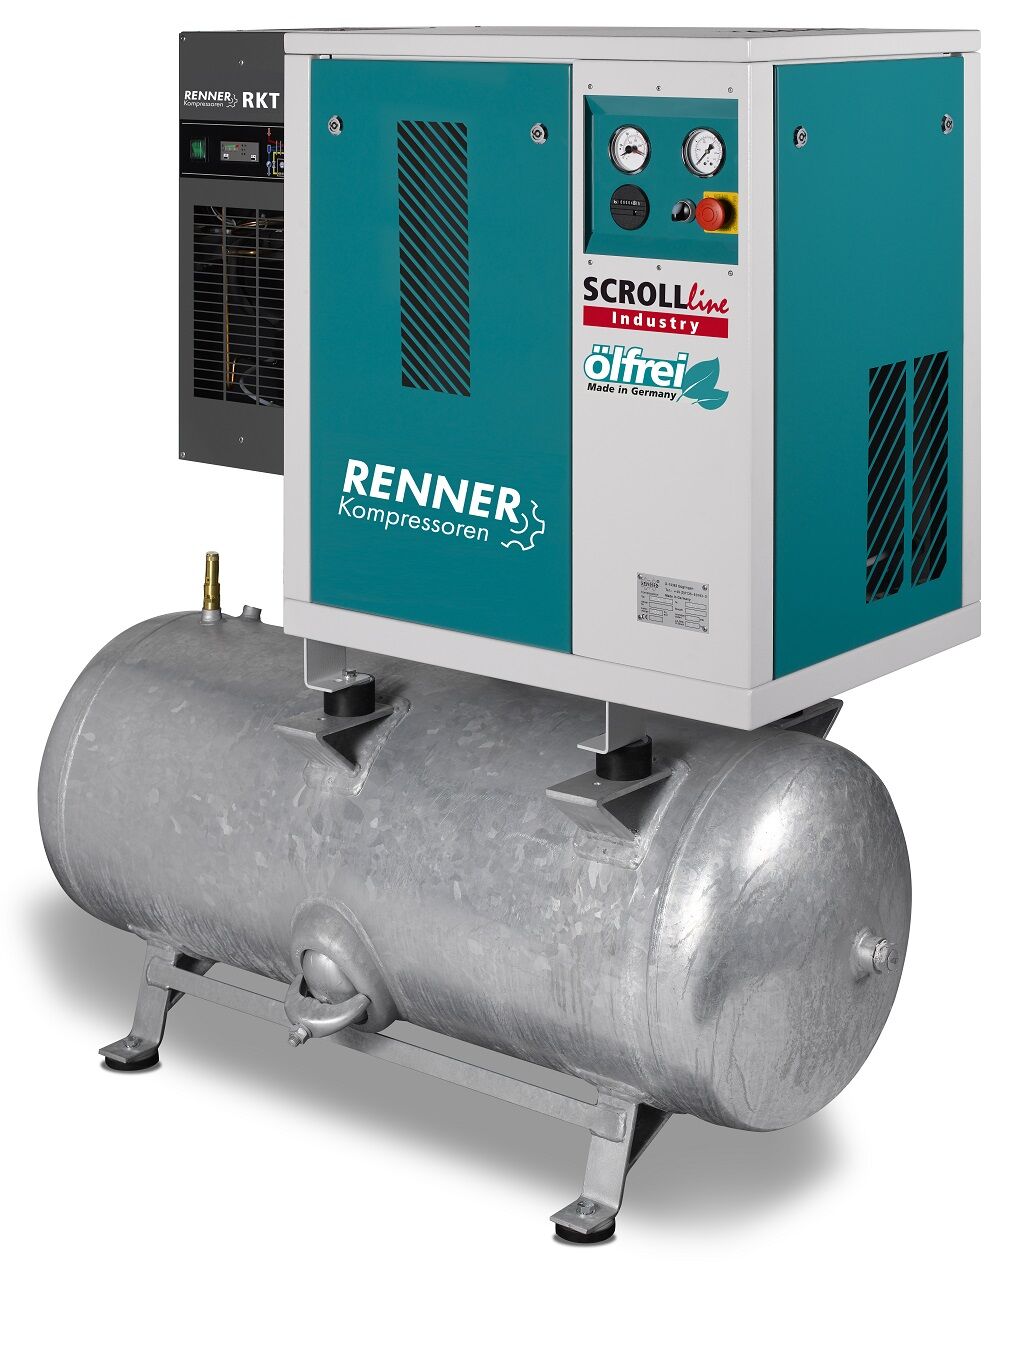 RENNER-Scrollkompr. Industry ölfrei - SLDK-I 4,5 auf 250 Liter Druckbehälter mit Kältetrockner